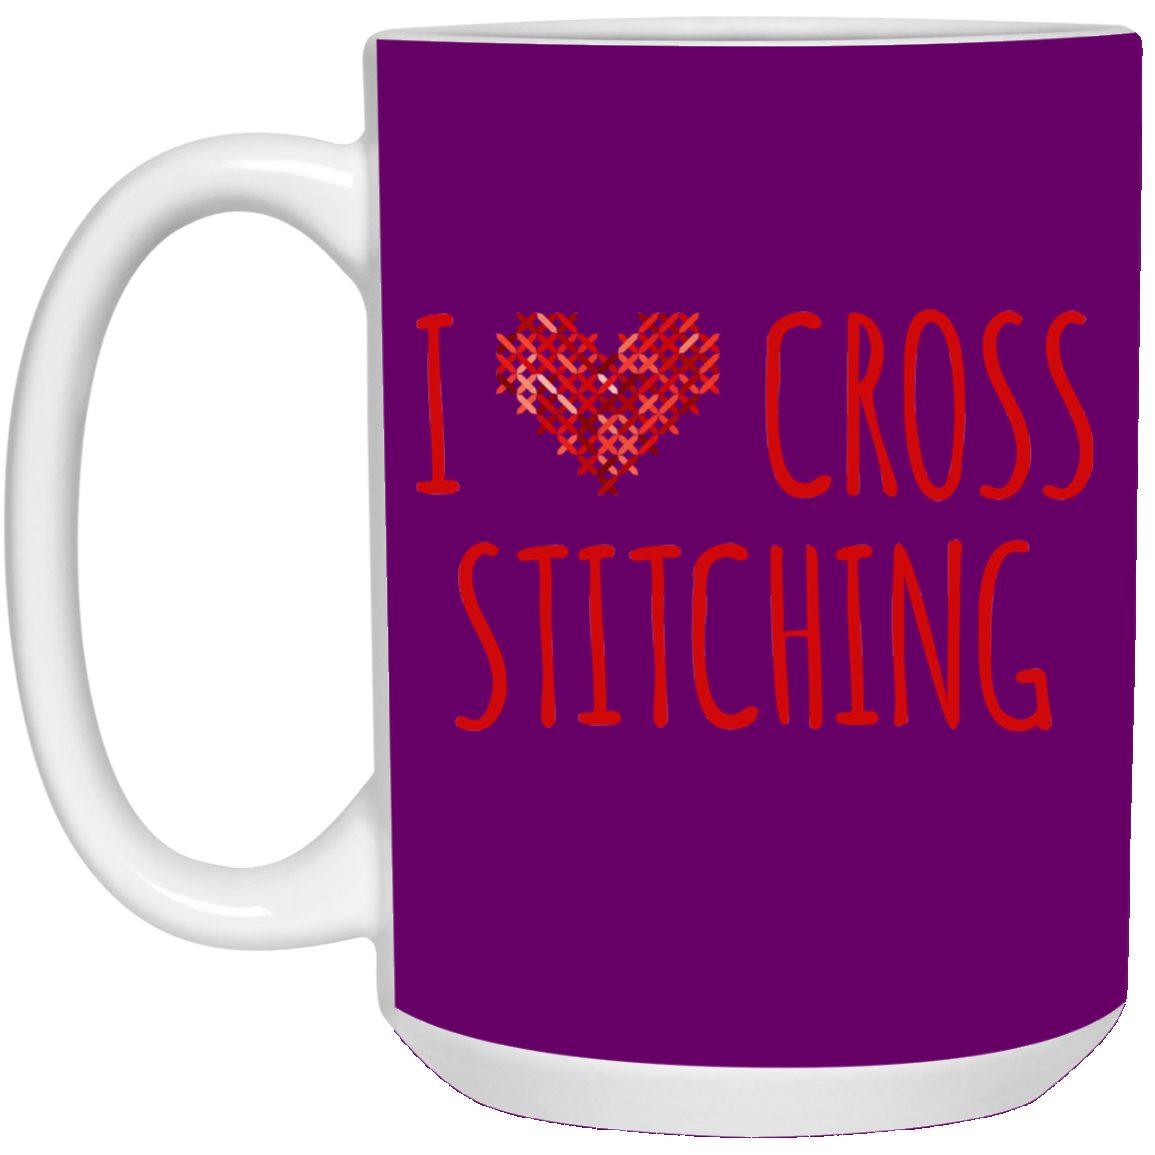 I Heart Cross Stitching White Mugs